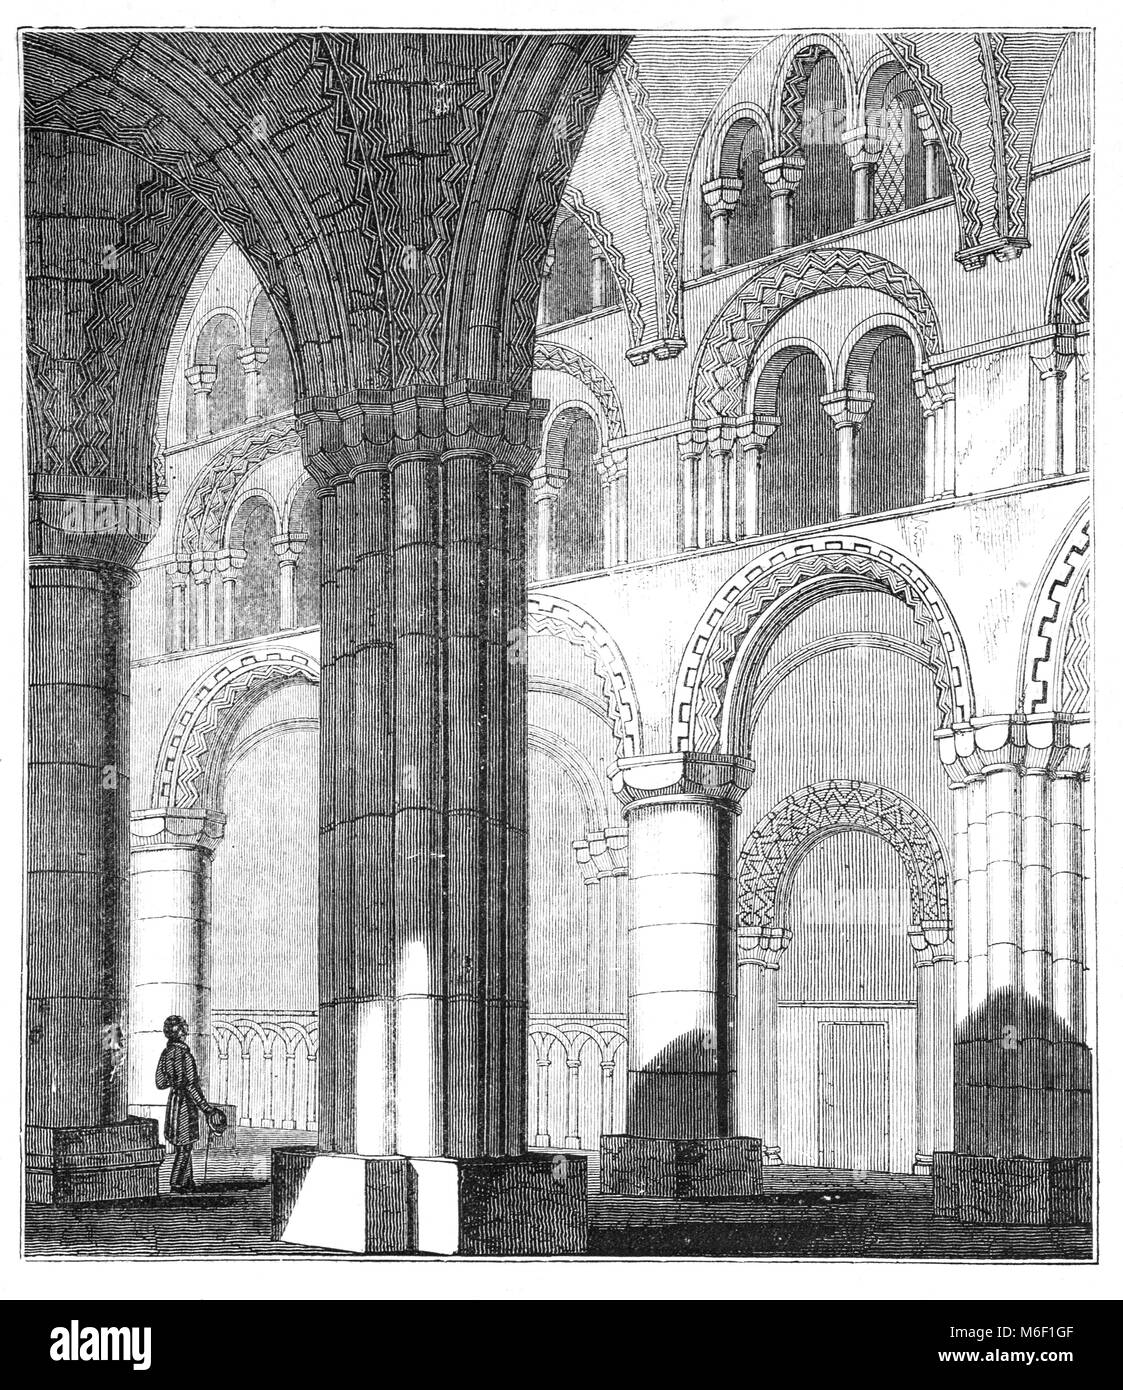 La nef de la cathédrale de Durham Romane Normande, l'accueil du Sanctuaire de St Cuthbert. La cathédrale actuelle dans la ville de Durham, en Angleterre, a remplacé l'église du 10ème siècle 'white', construit dans le cadre d'une fondation monastique pour abriter le culte de Saint Cuthbert de Lindisfarne. Banque D'Images